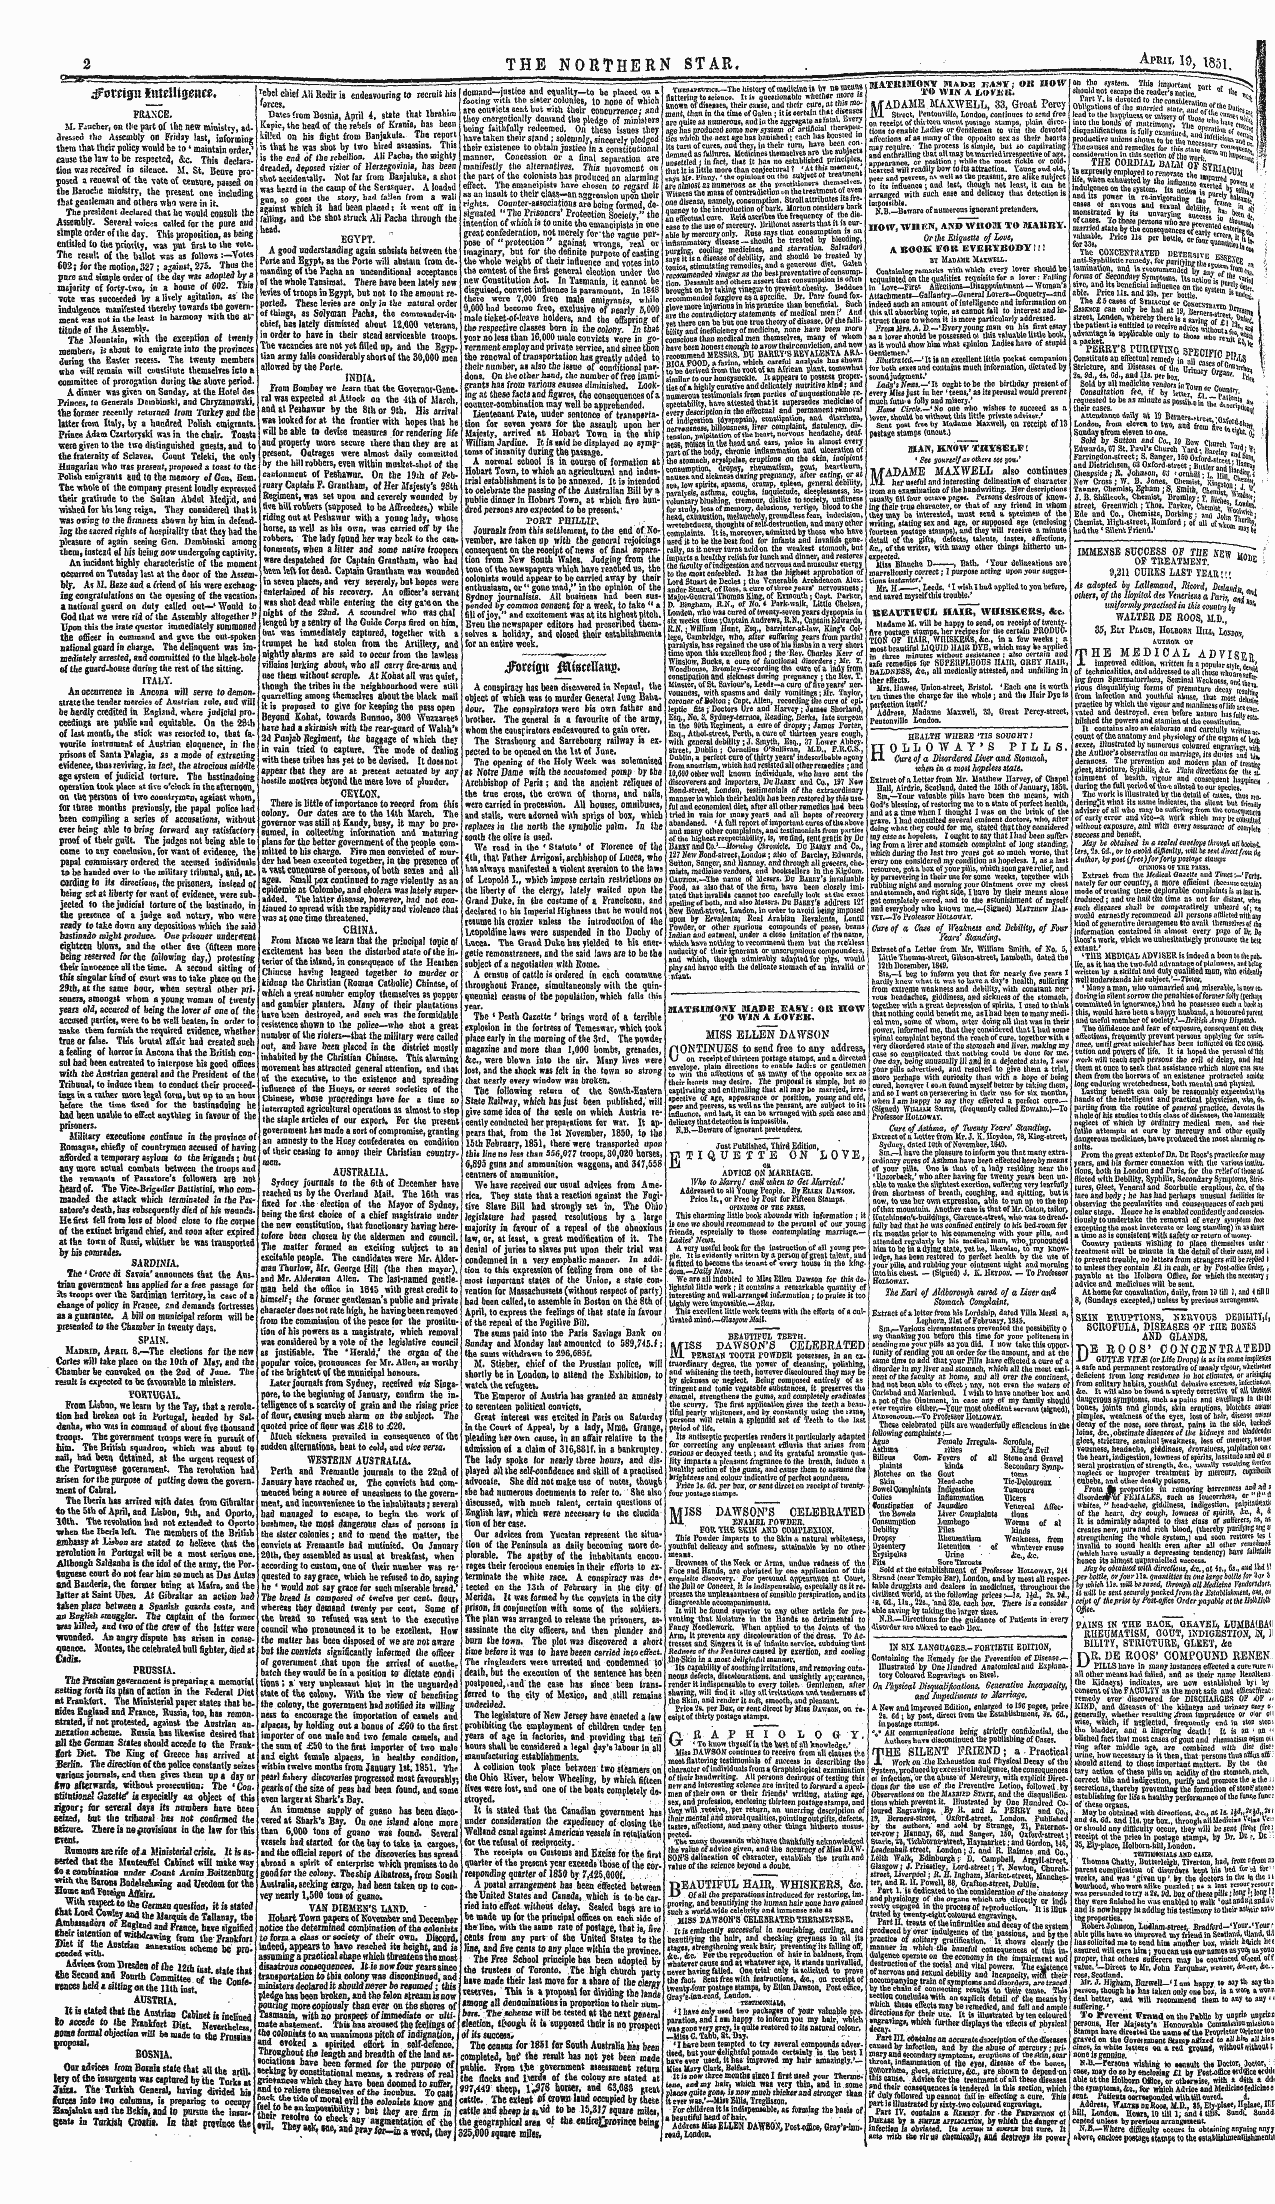 Northern Star (1837-1852): jS F Y, 2nd edition - Df Oreigu Inxmiww